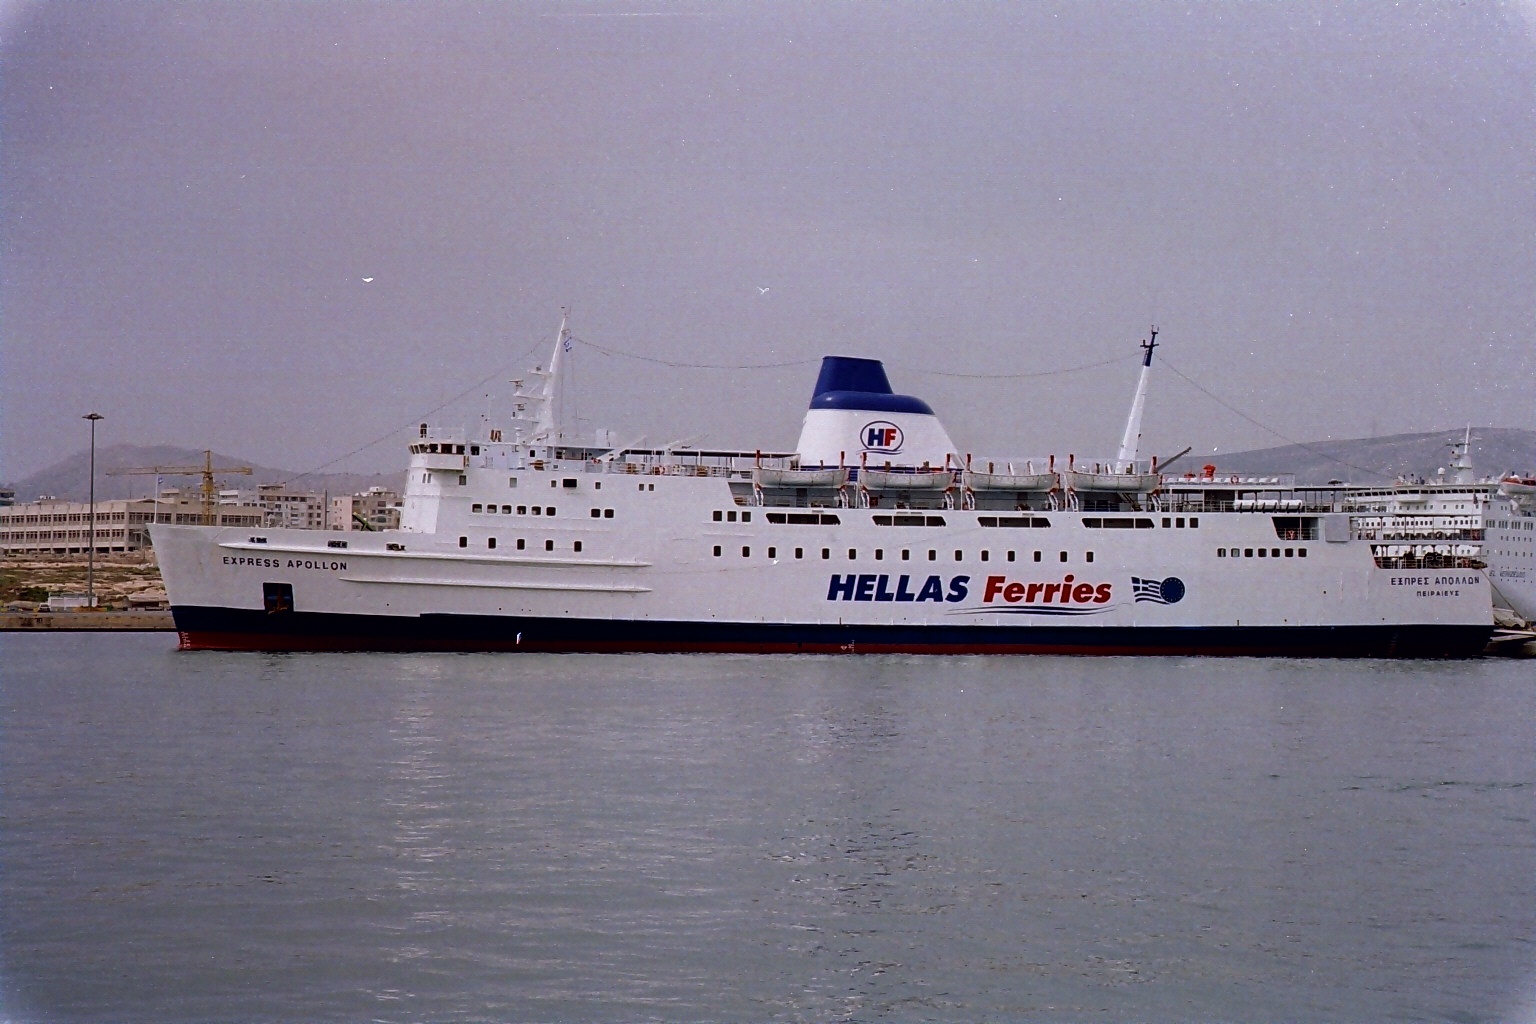 expressapollon @ piraeus 2001